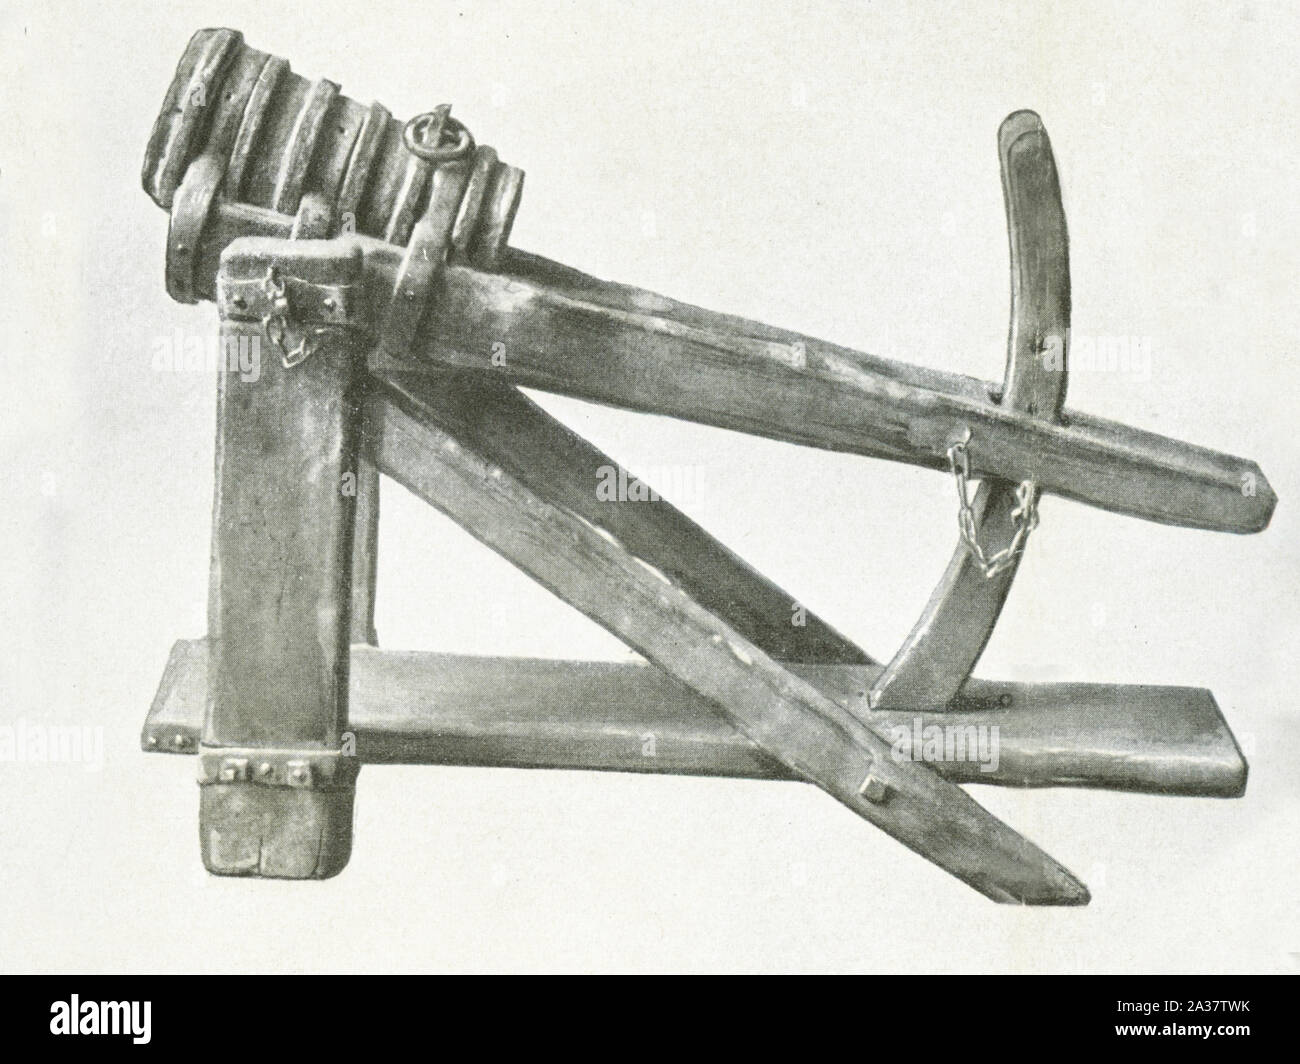 Questa arma medioevale risale al 1450-1500. Esso agisce come una catapulta. Foto Stock